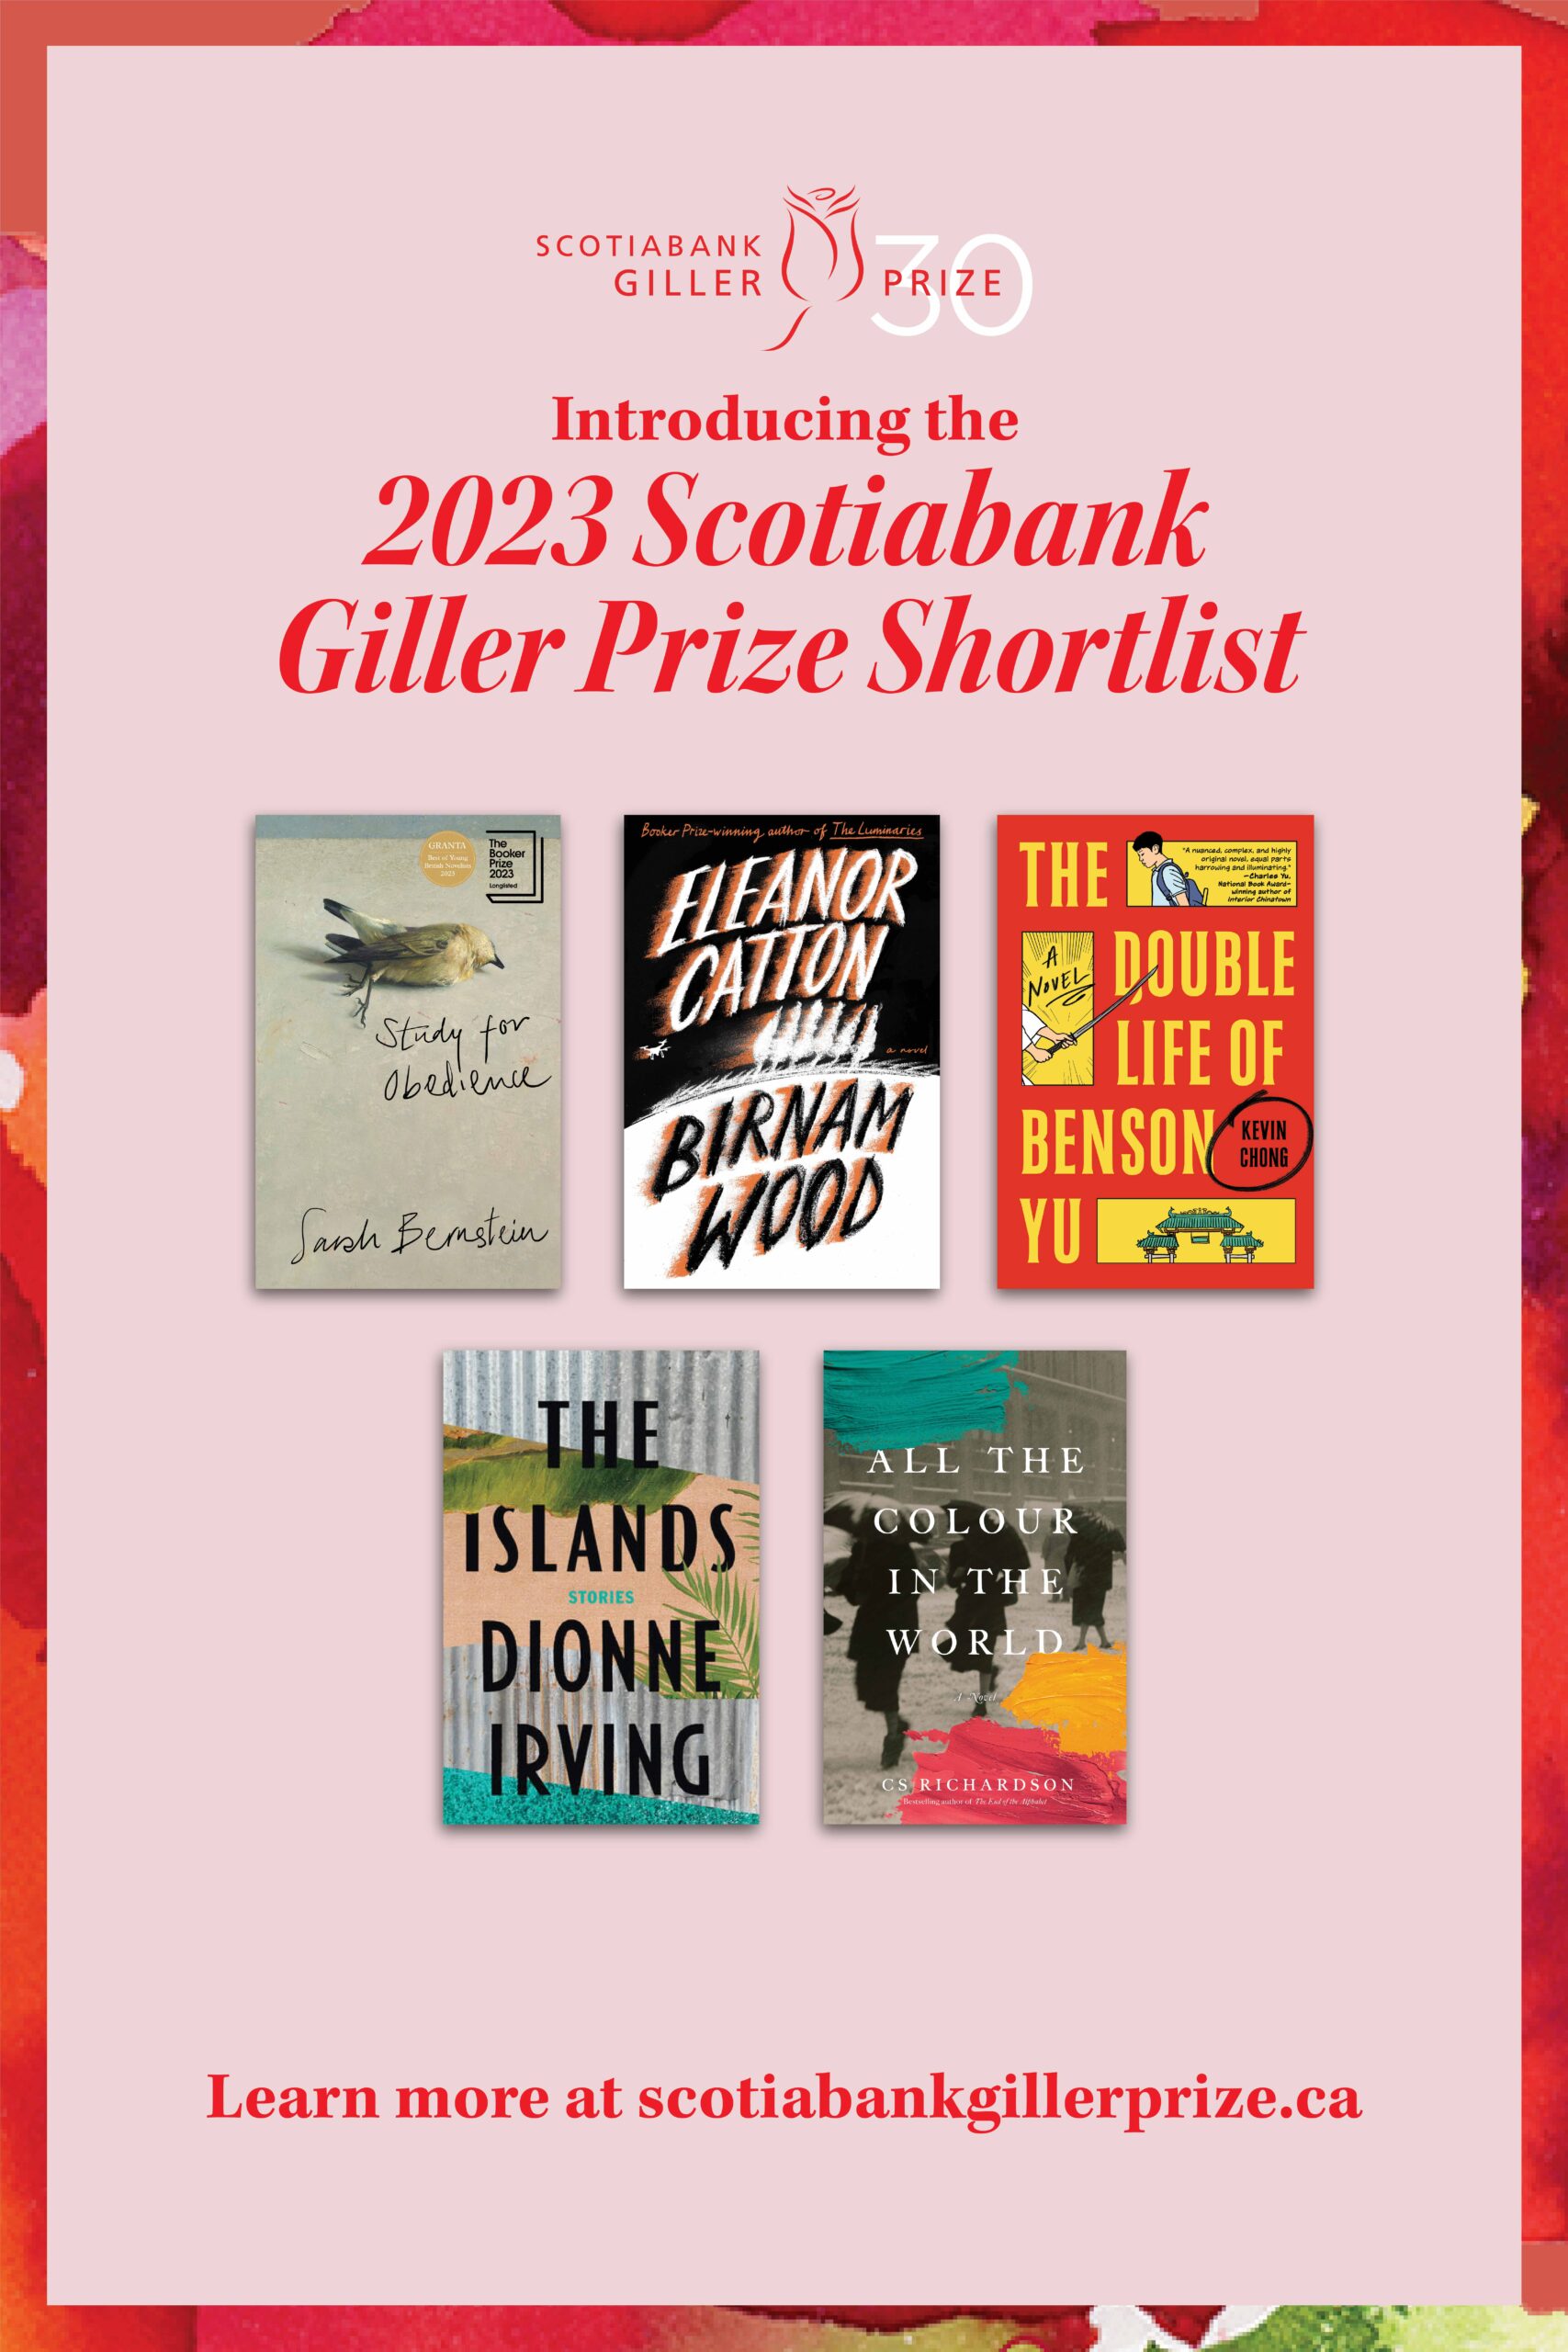 2023 Scotiabank Giller Prize shortlist poster